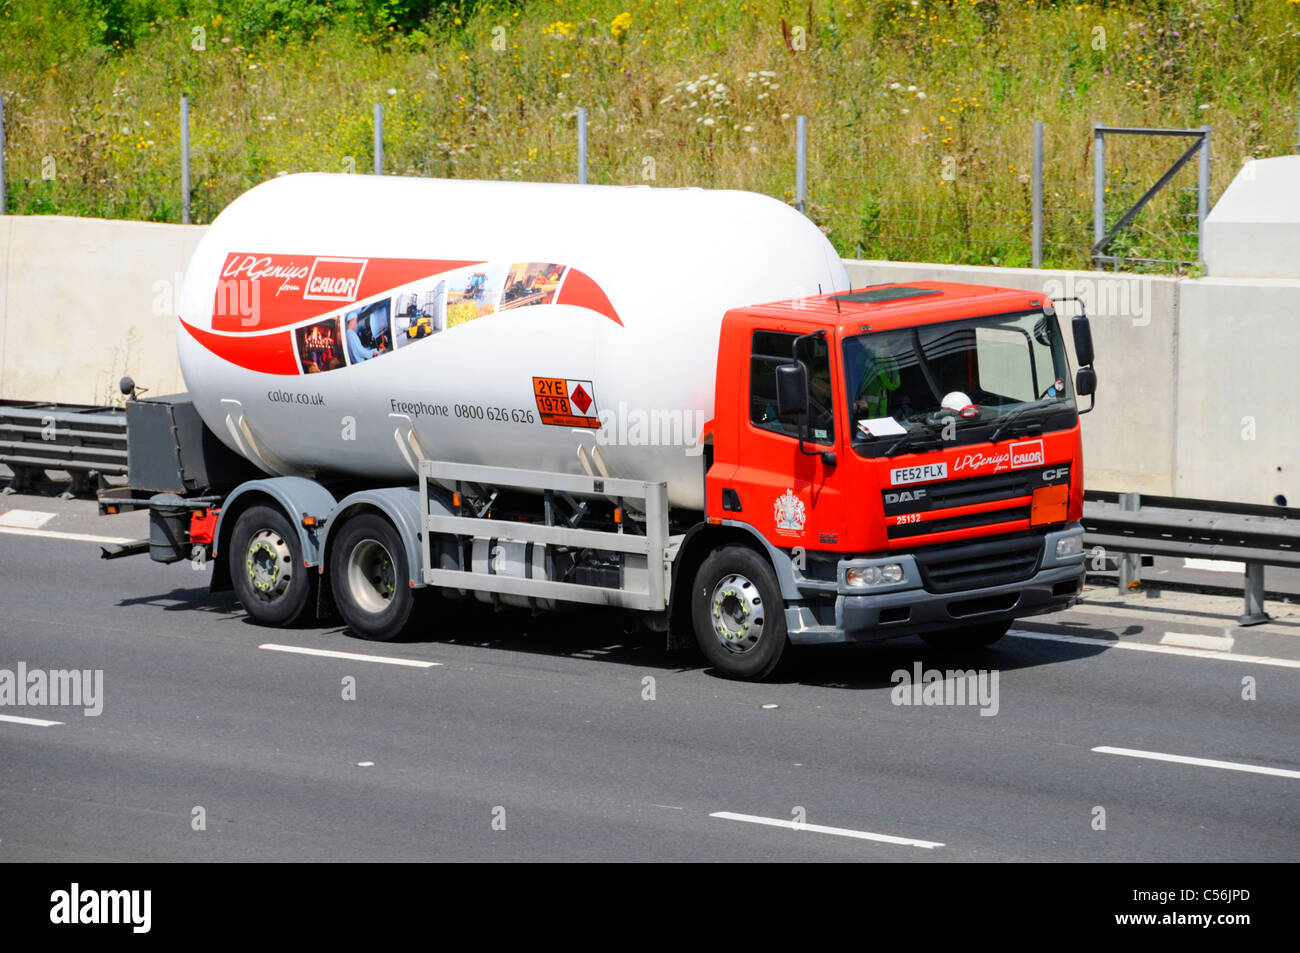 Calor Gas Tanker Lieferung LKW mit Hazchem gefährliche Chemikalien und Gefahrgut Warnung Zeichen und gebührenfreie Nummer Stockfoto